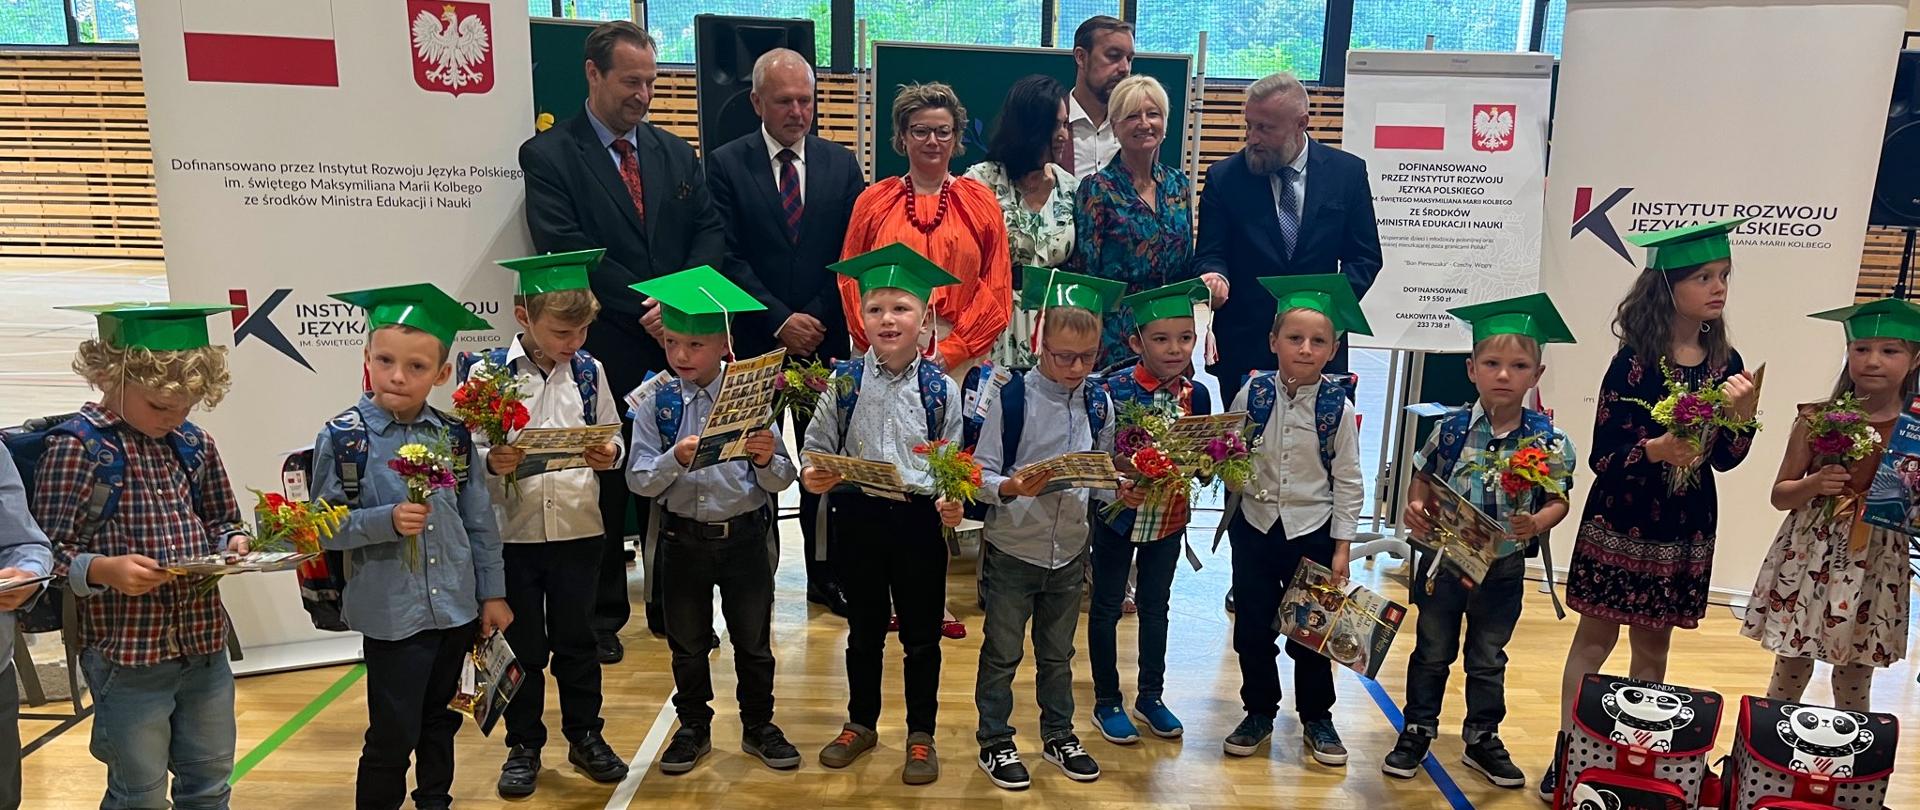 Zahájení školního roku na polských školách v České republice